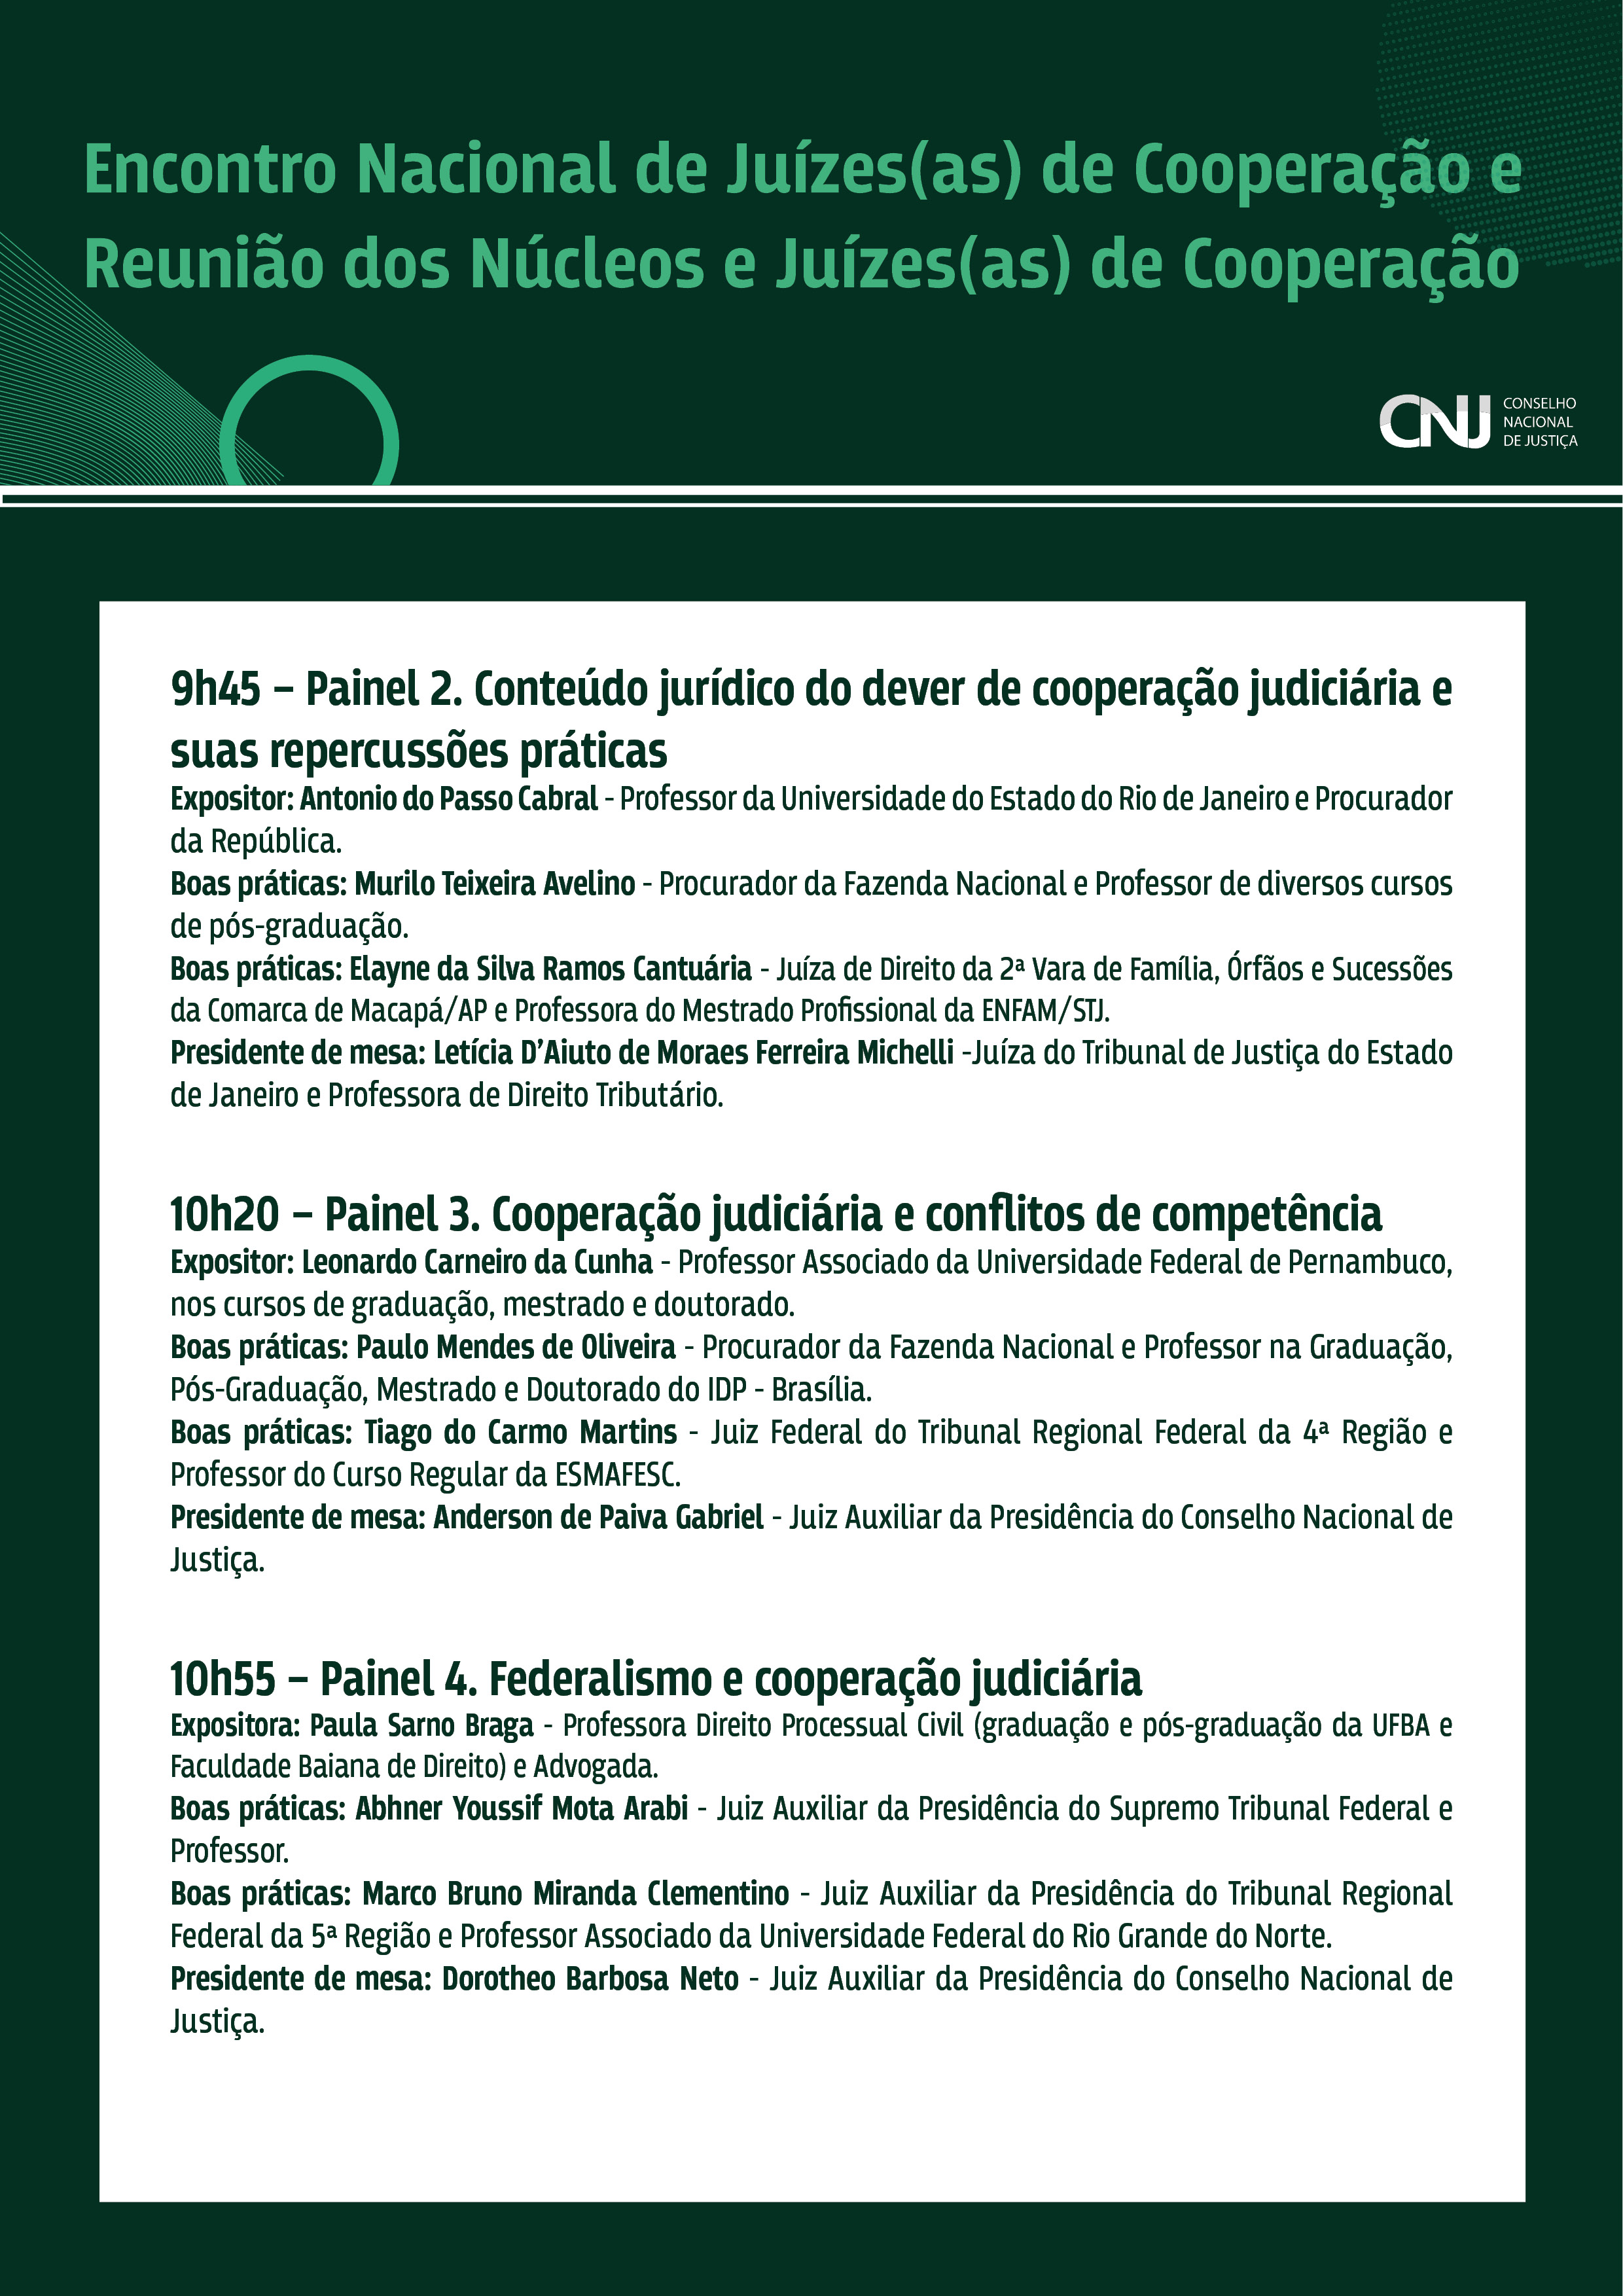 programação do Encontro Nacional de Juízes(as) de Cooperação Judiciária e Reunião dos Núcleos e Juízes(as) de Cooperação em formato jpeg - página 4